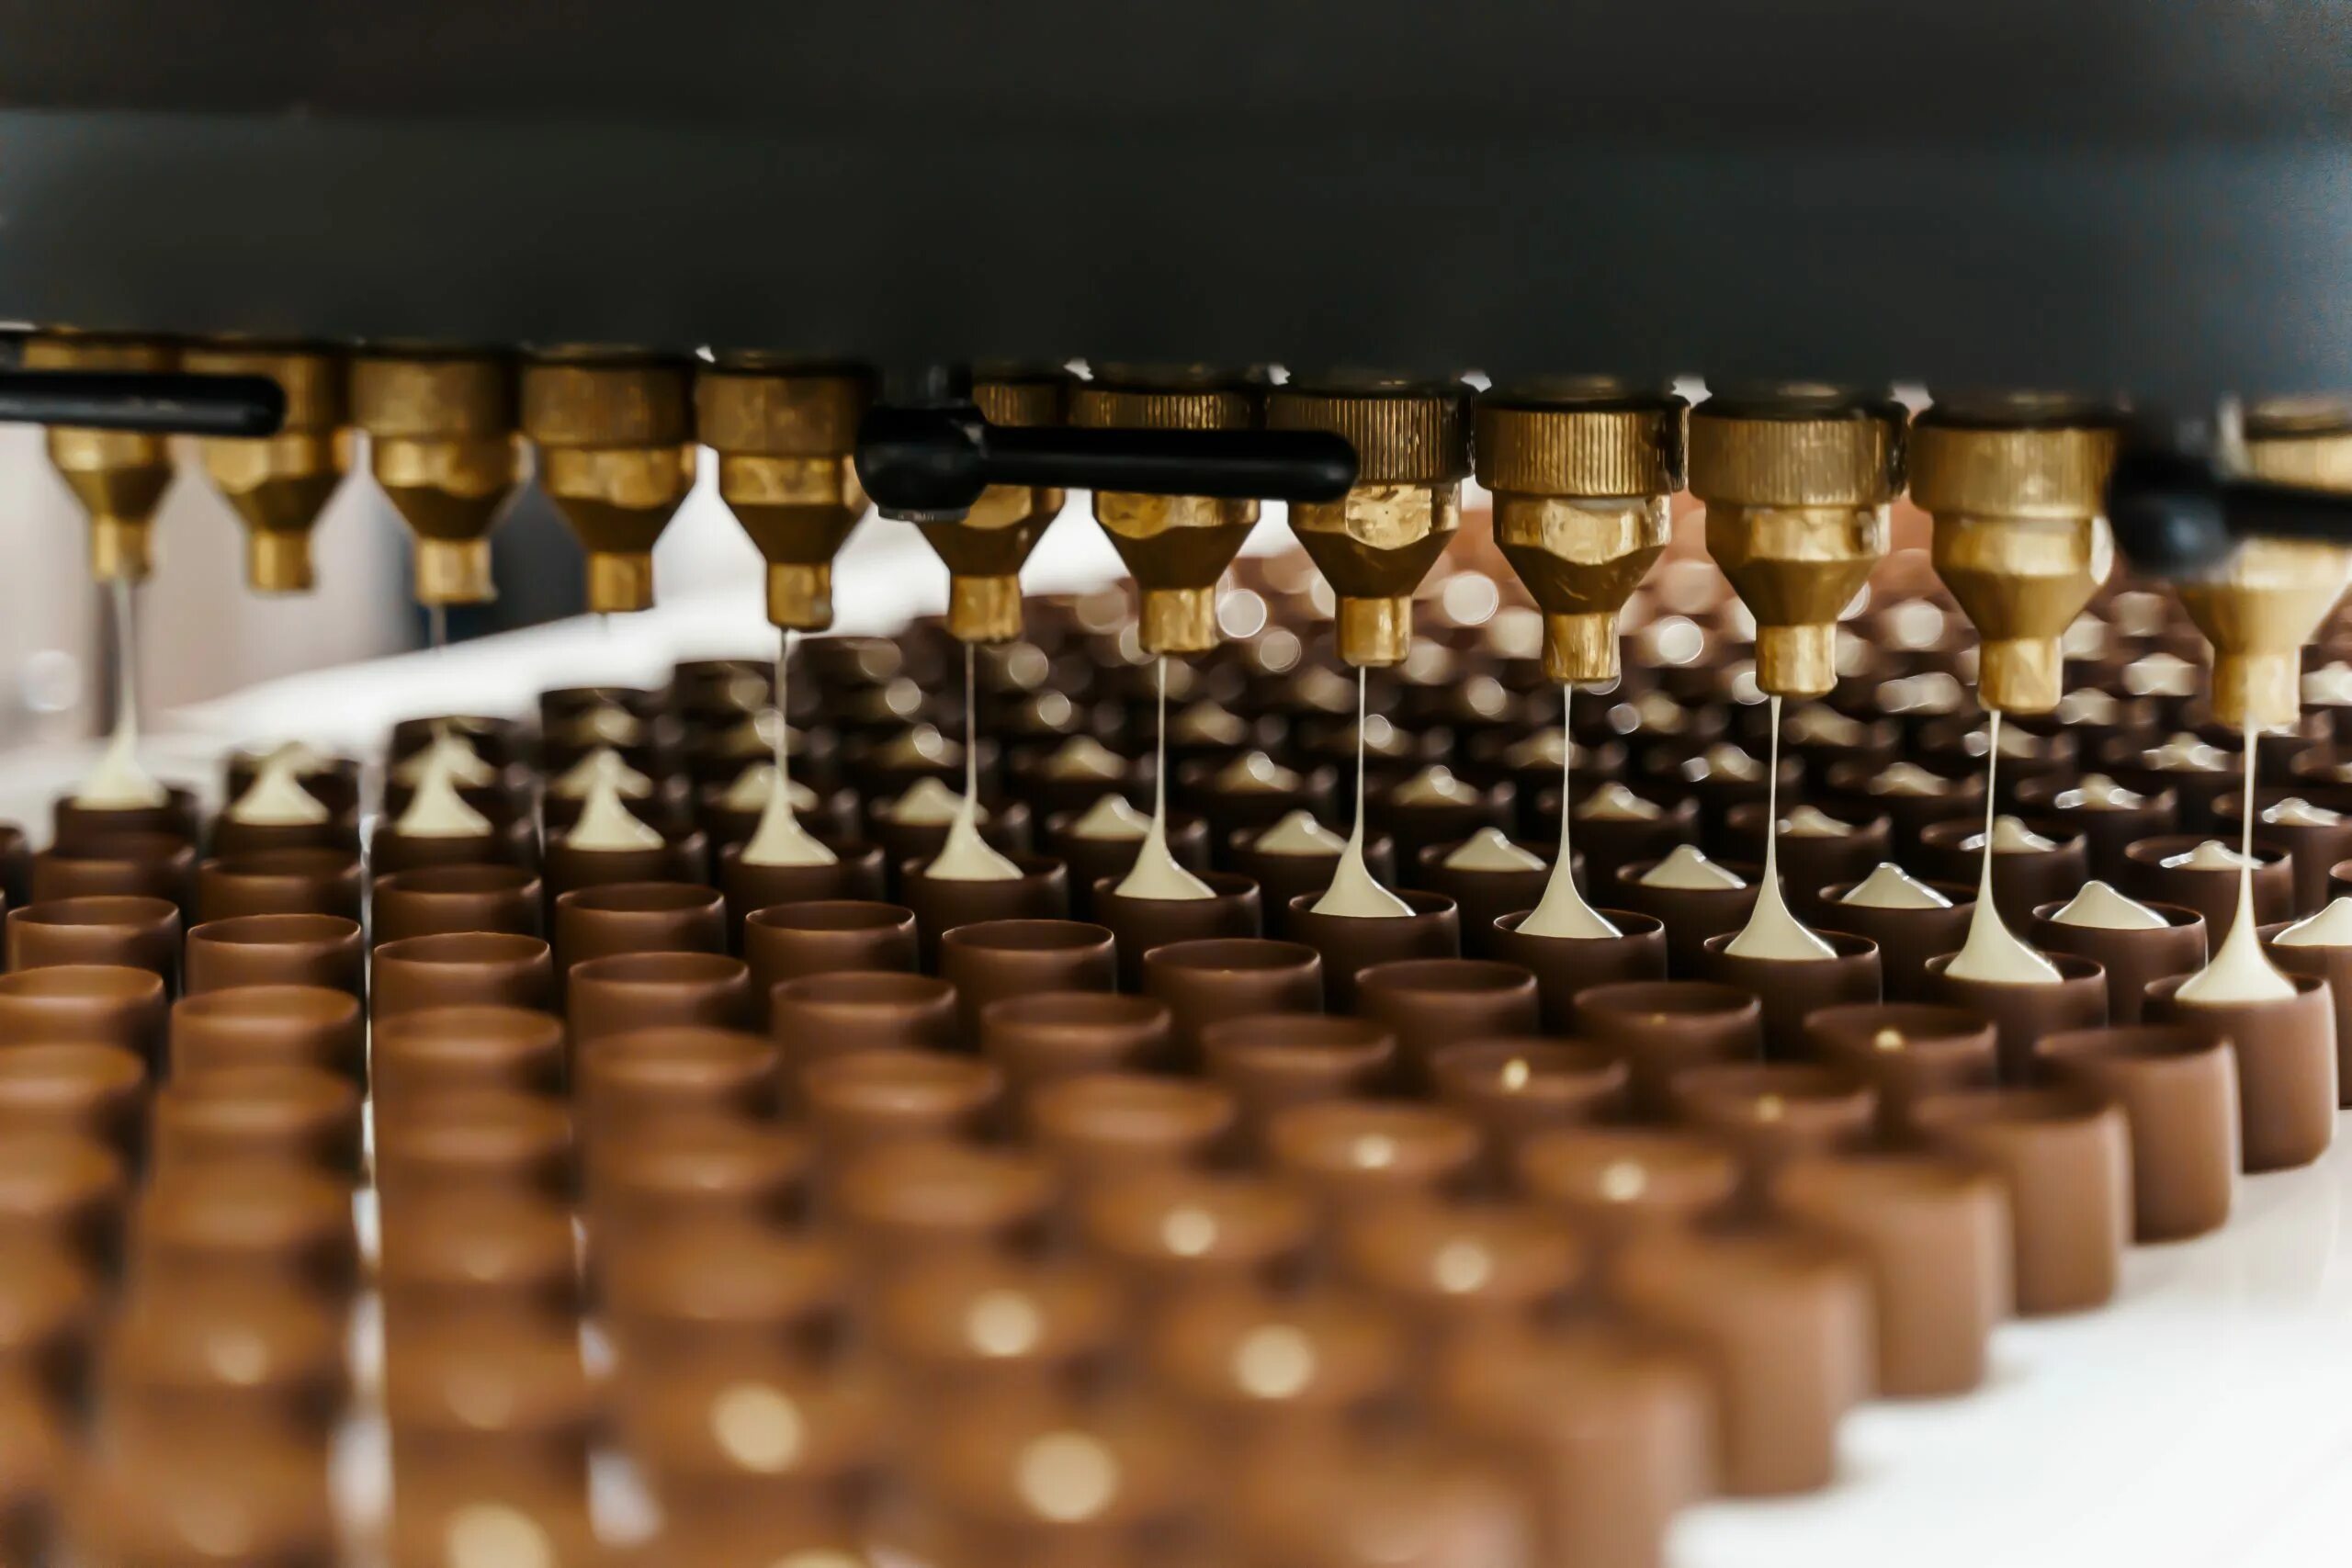 Можно шоколадную фабрику. Самарская шоколадная фабрика. Россия (шоколадная фабрика). Шоколад Самарской фабрики. Российские шоколадные фабрики.